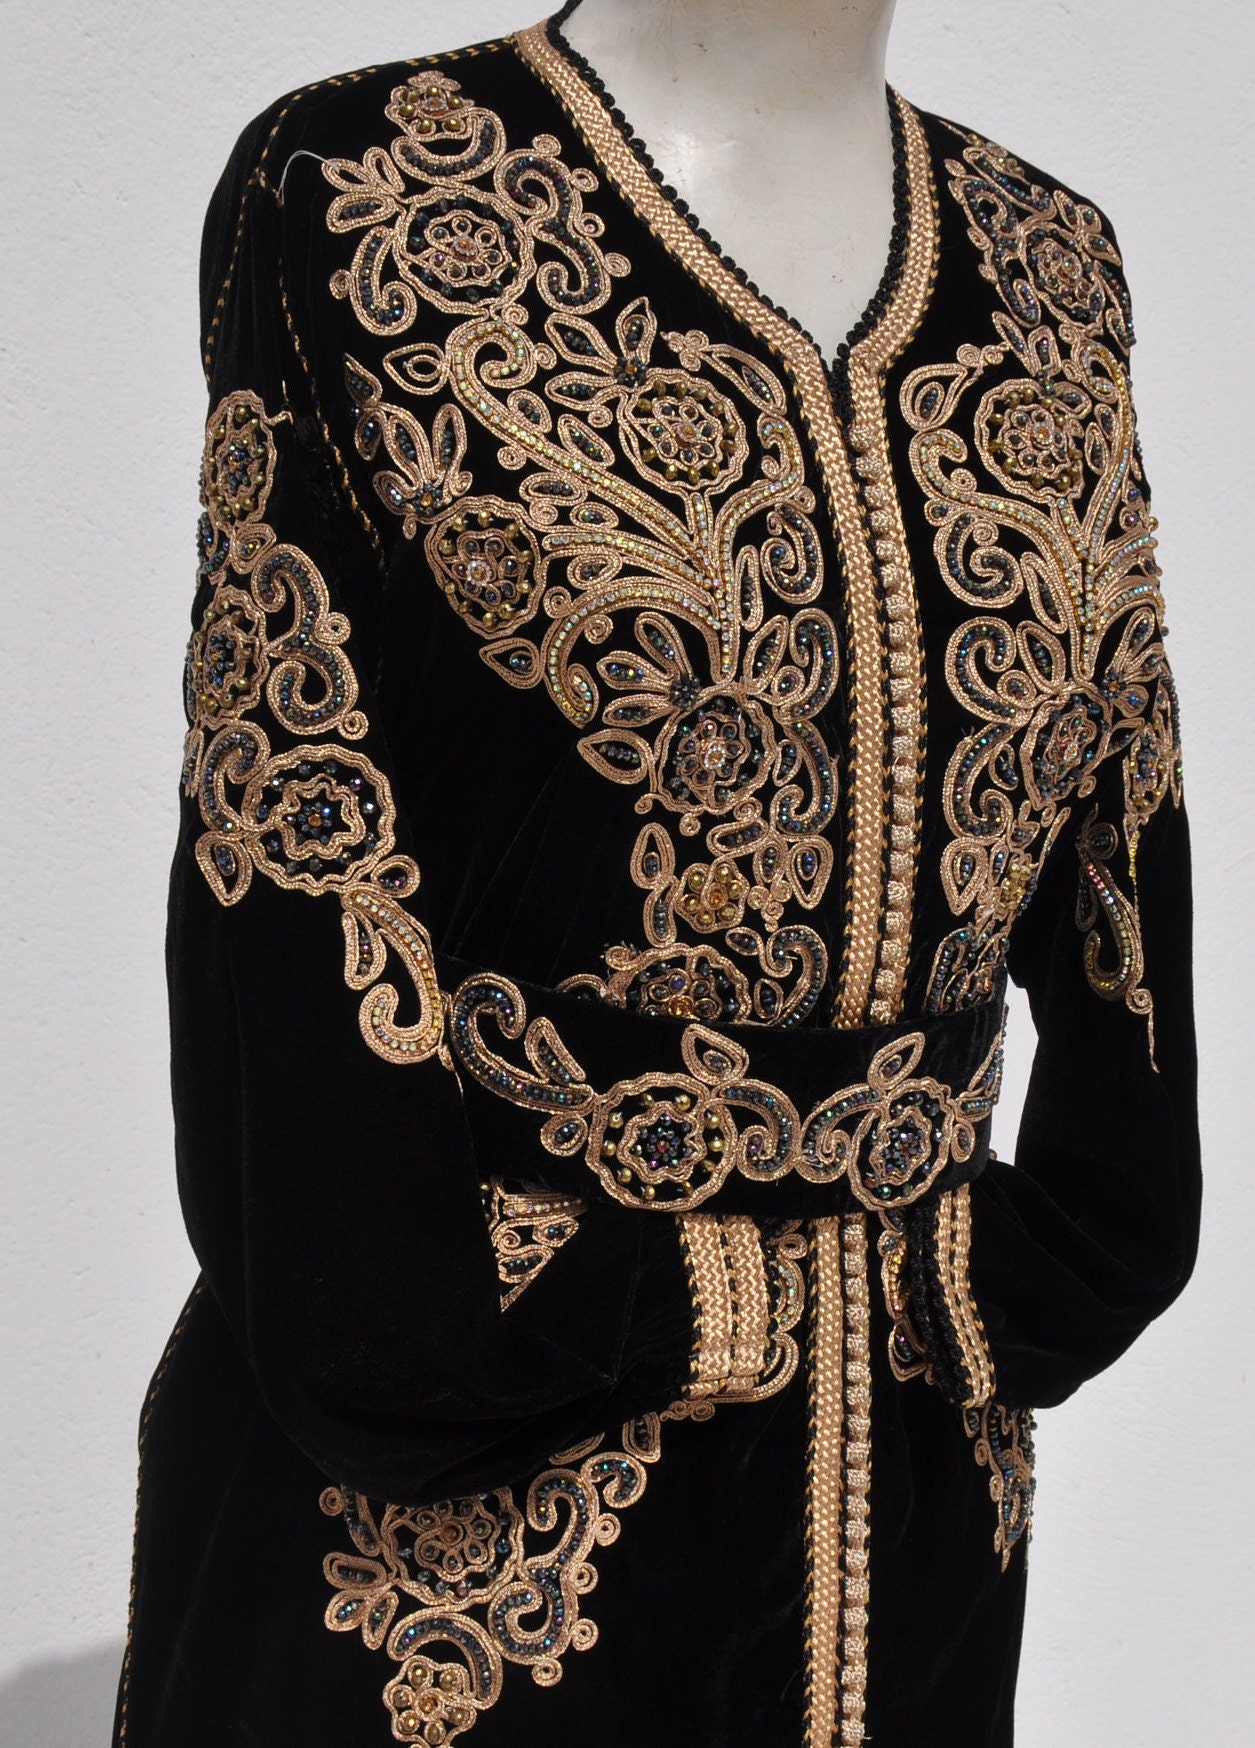 Moroccan kaftan for woman Black moroccan bohemian dress | Etsy